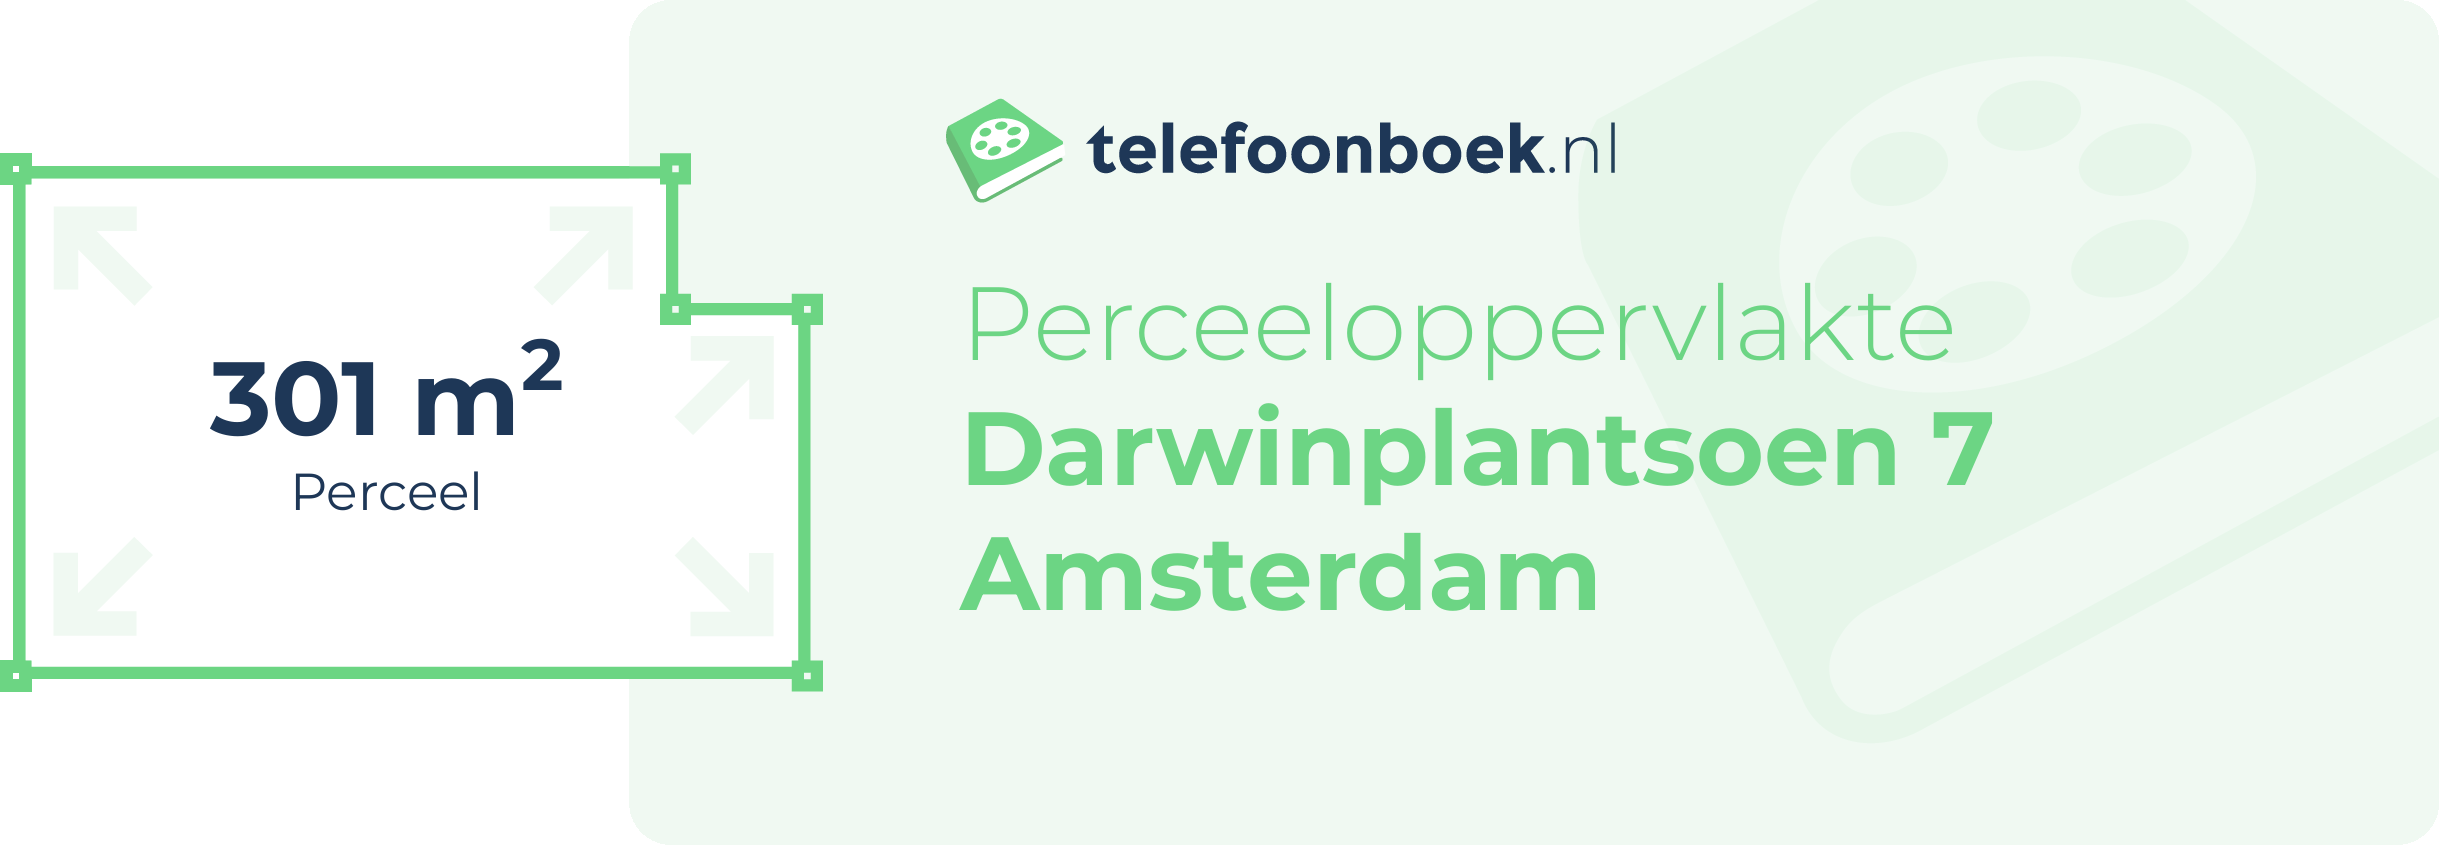 Perceeloppervlakte Darwinplantsoen 7 Amsterdam